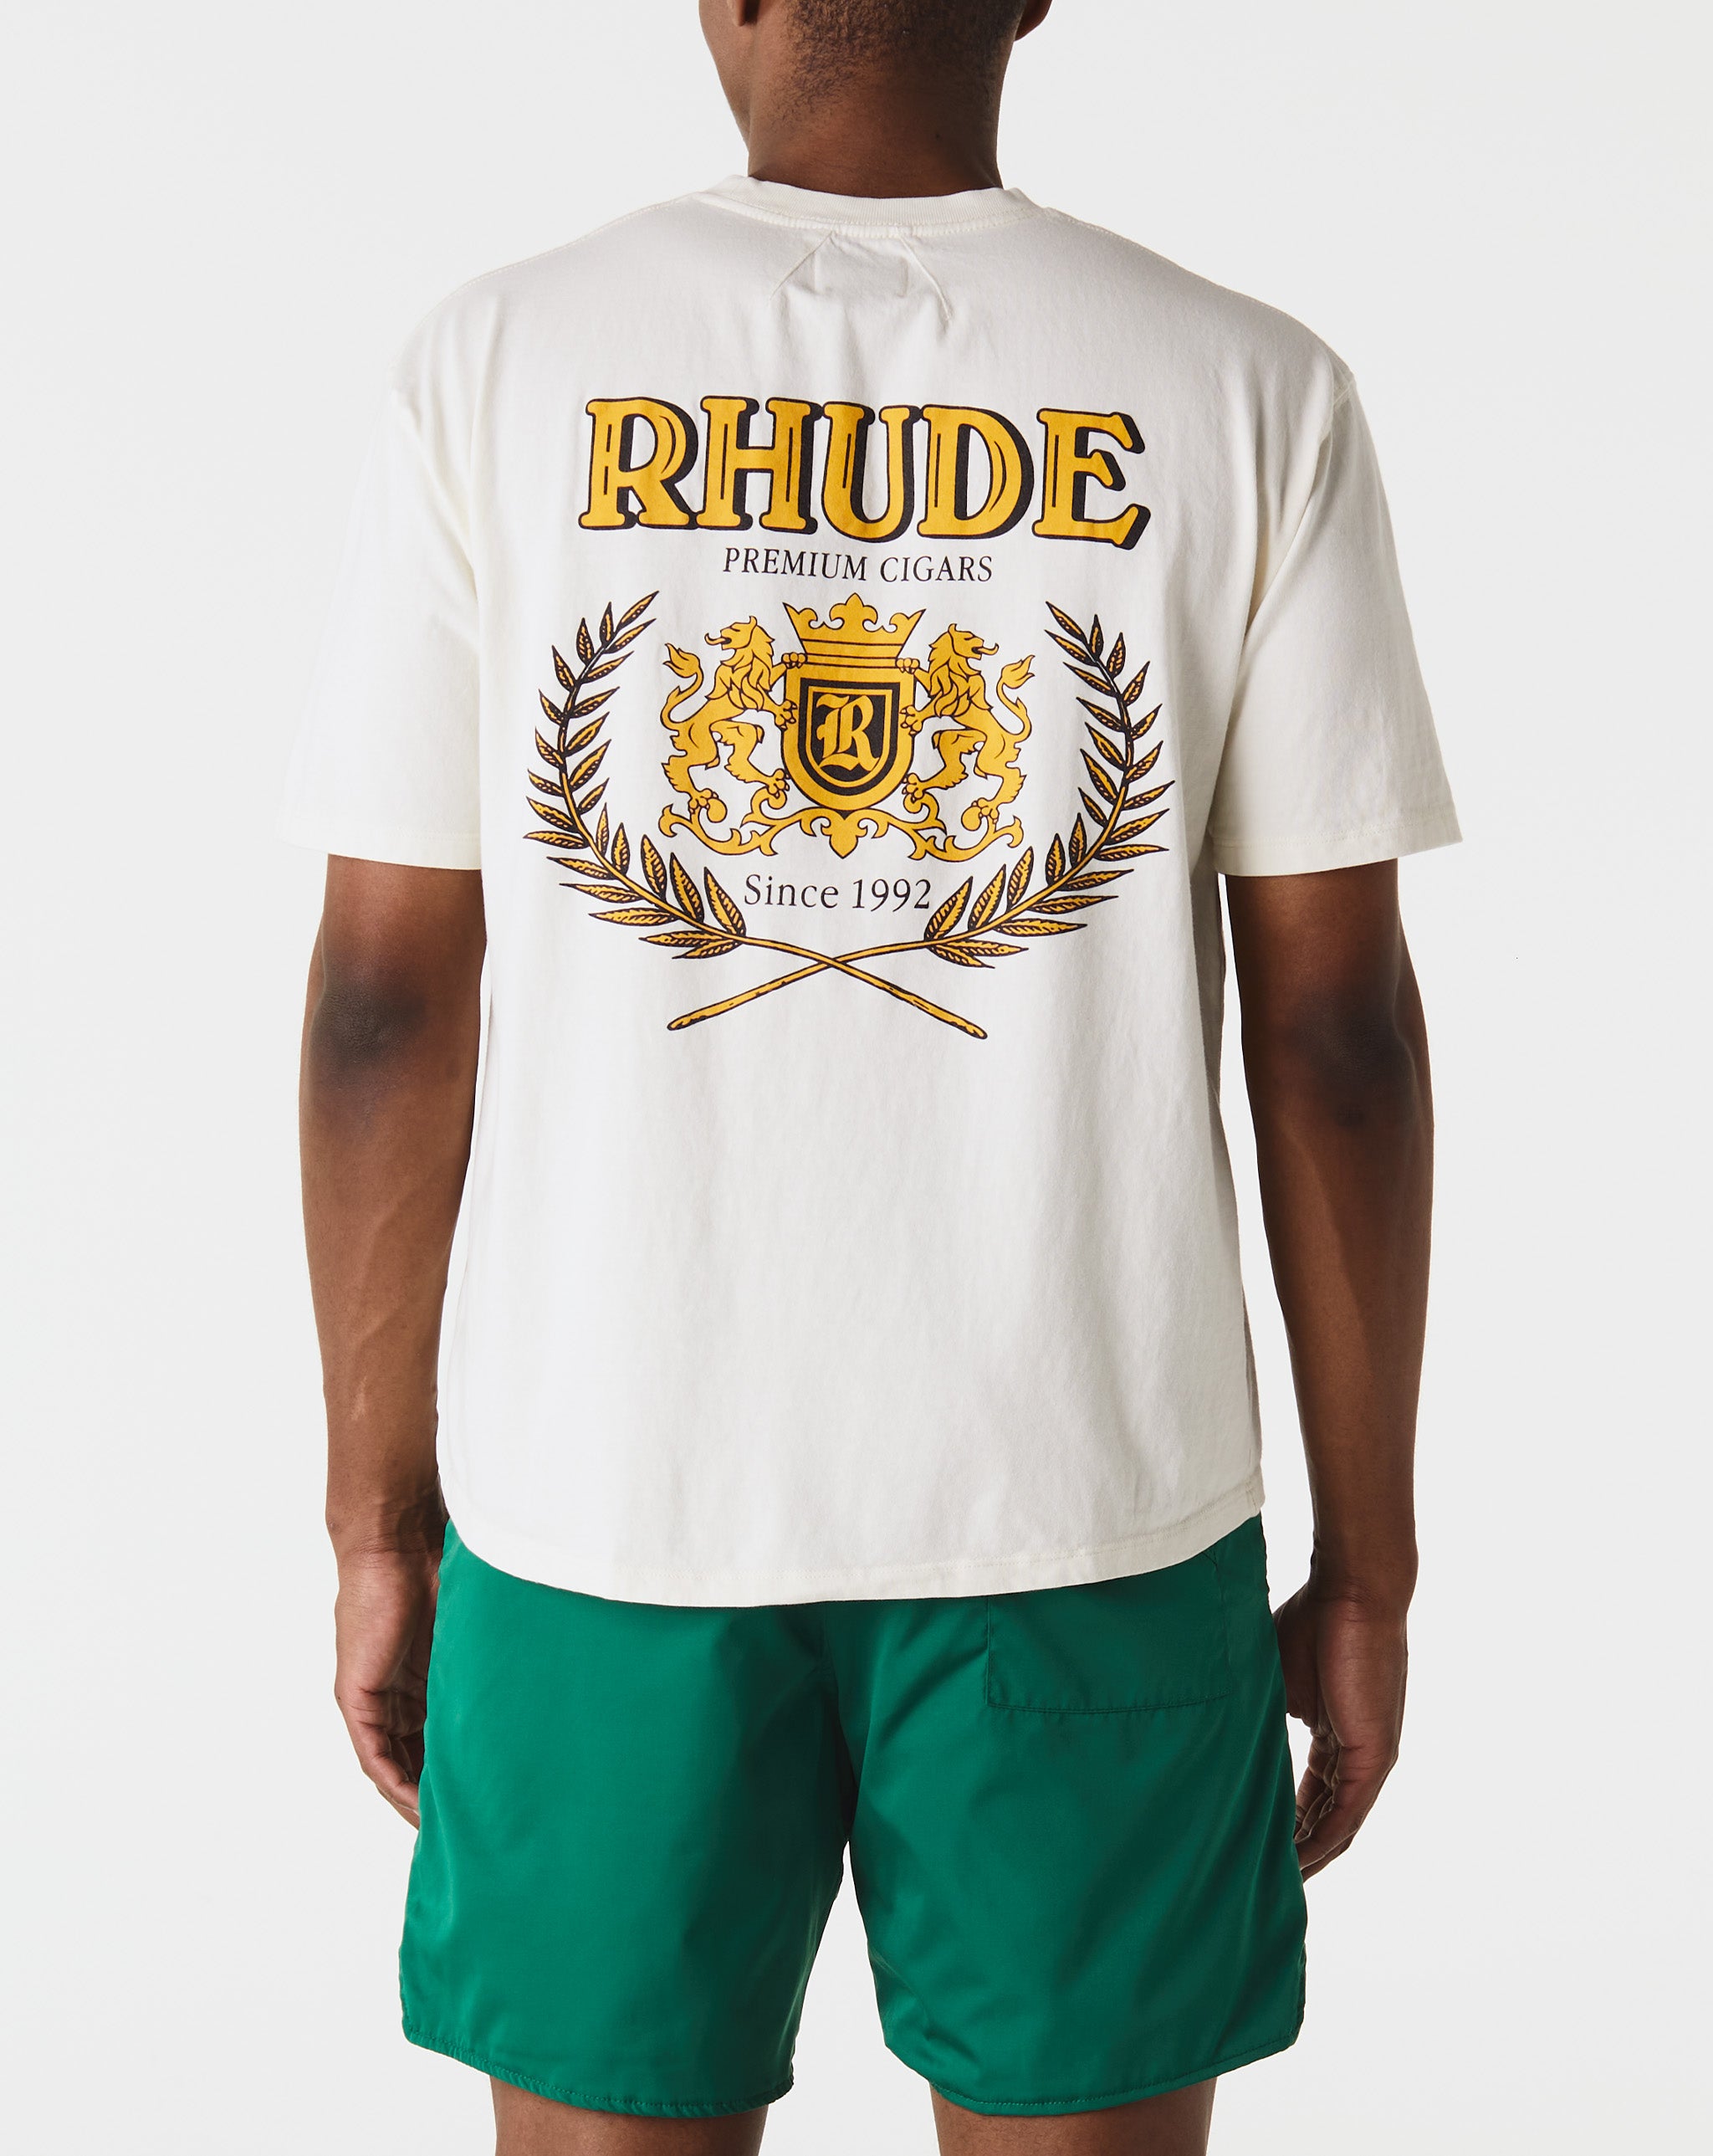 Rhude Cresta Cigar T-Shirt  - Cheap 127-0 Jordan outlet